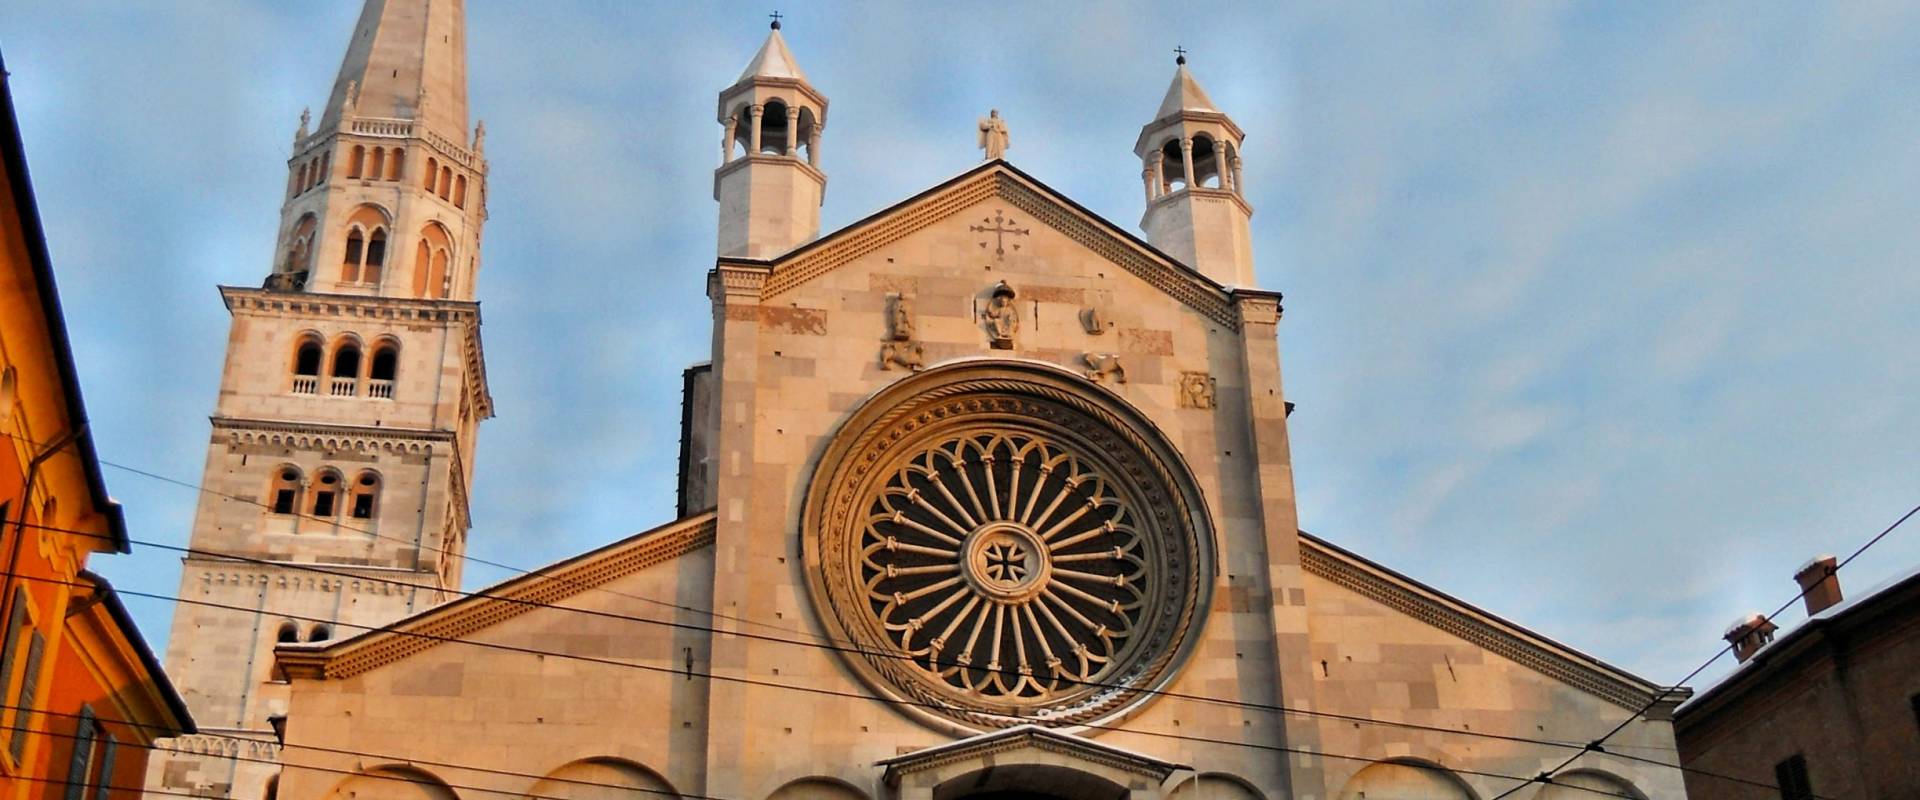 Duomo di Modena, esterno photo by Erika passini